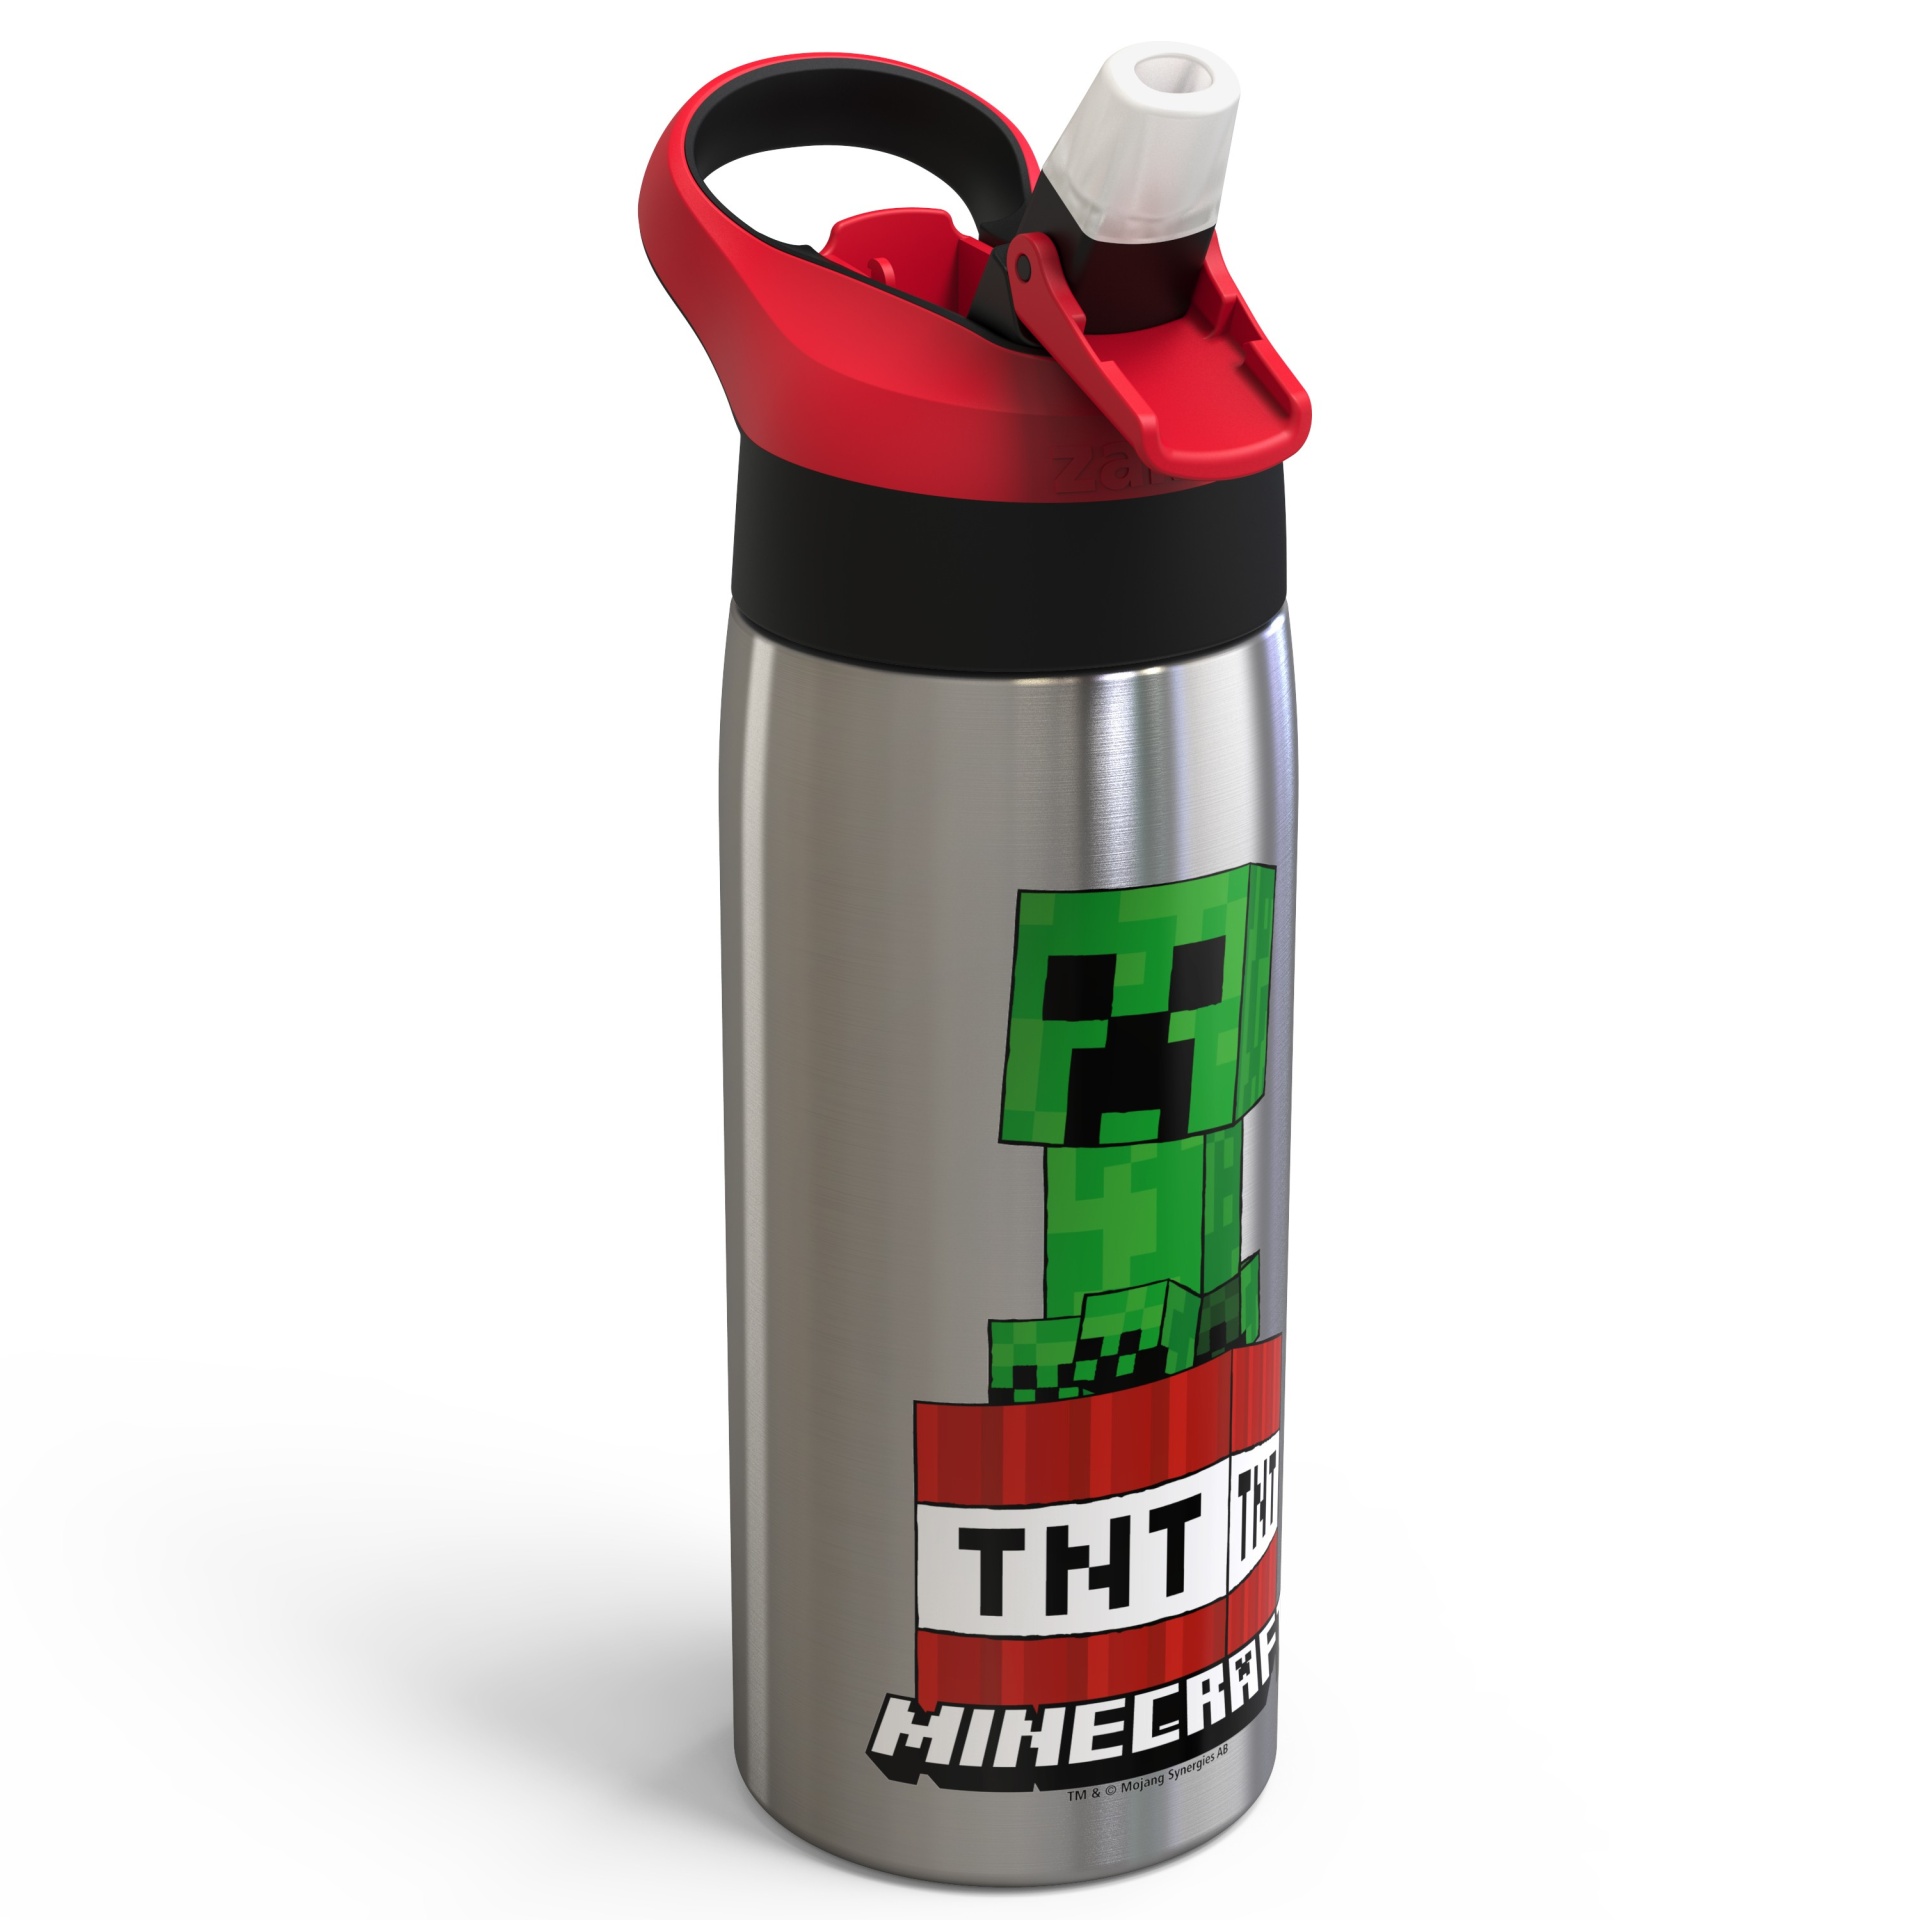 Minecraft Stainless Steel Water Bottle. By Artistshot